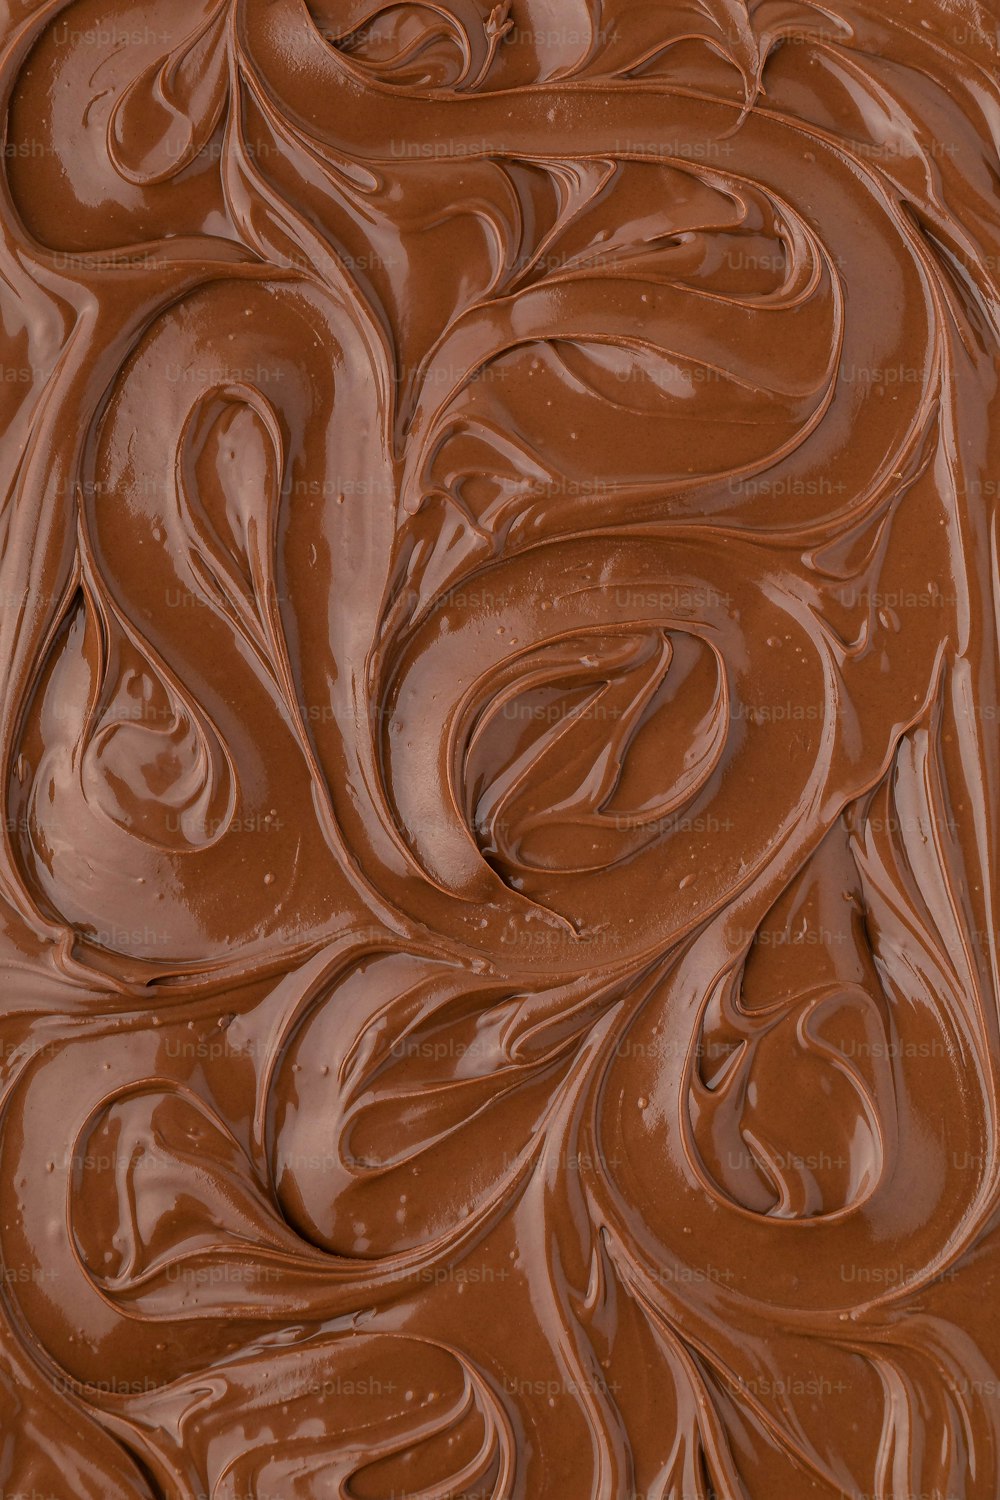 Un primer plano de un pastel de chocolate con glaseado de chocolate